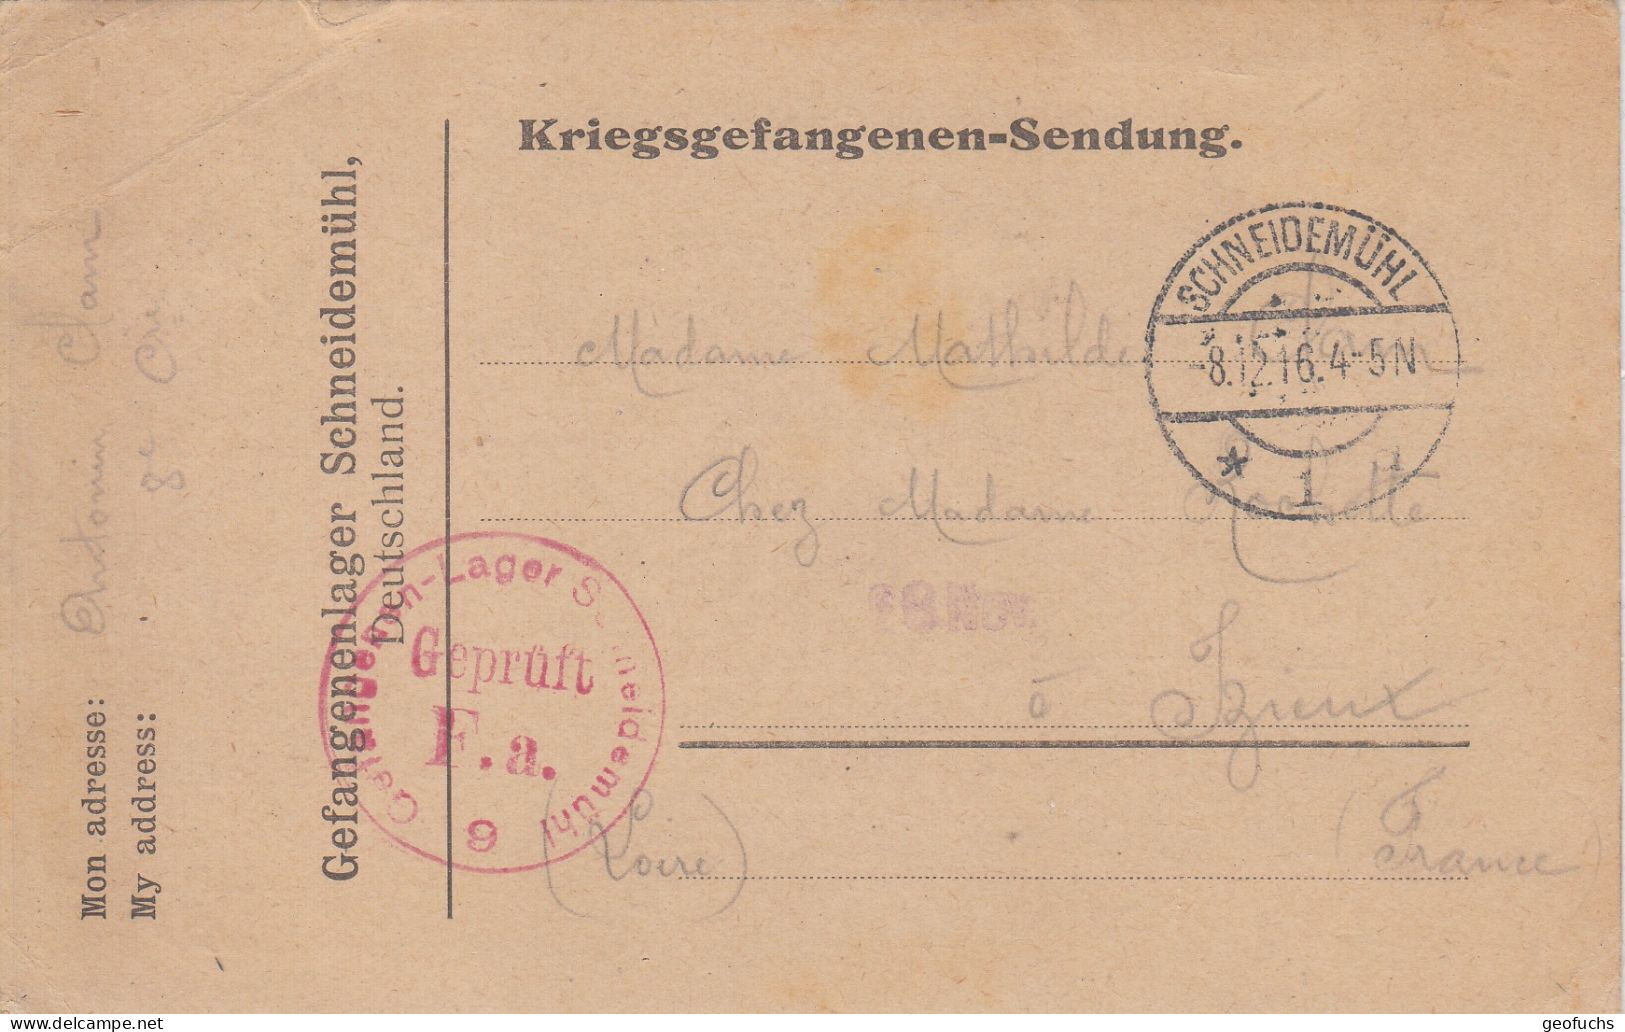 Carte Allemande En Franchise Pour Prisonnier Français, Camp De SCHEIDEMÜHL (Prusse),  écrite 8.12.16, Censurée - Guerre De 1914-18